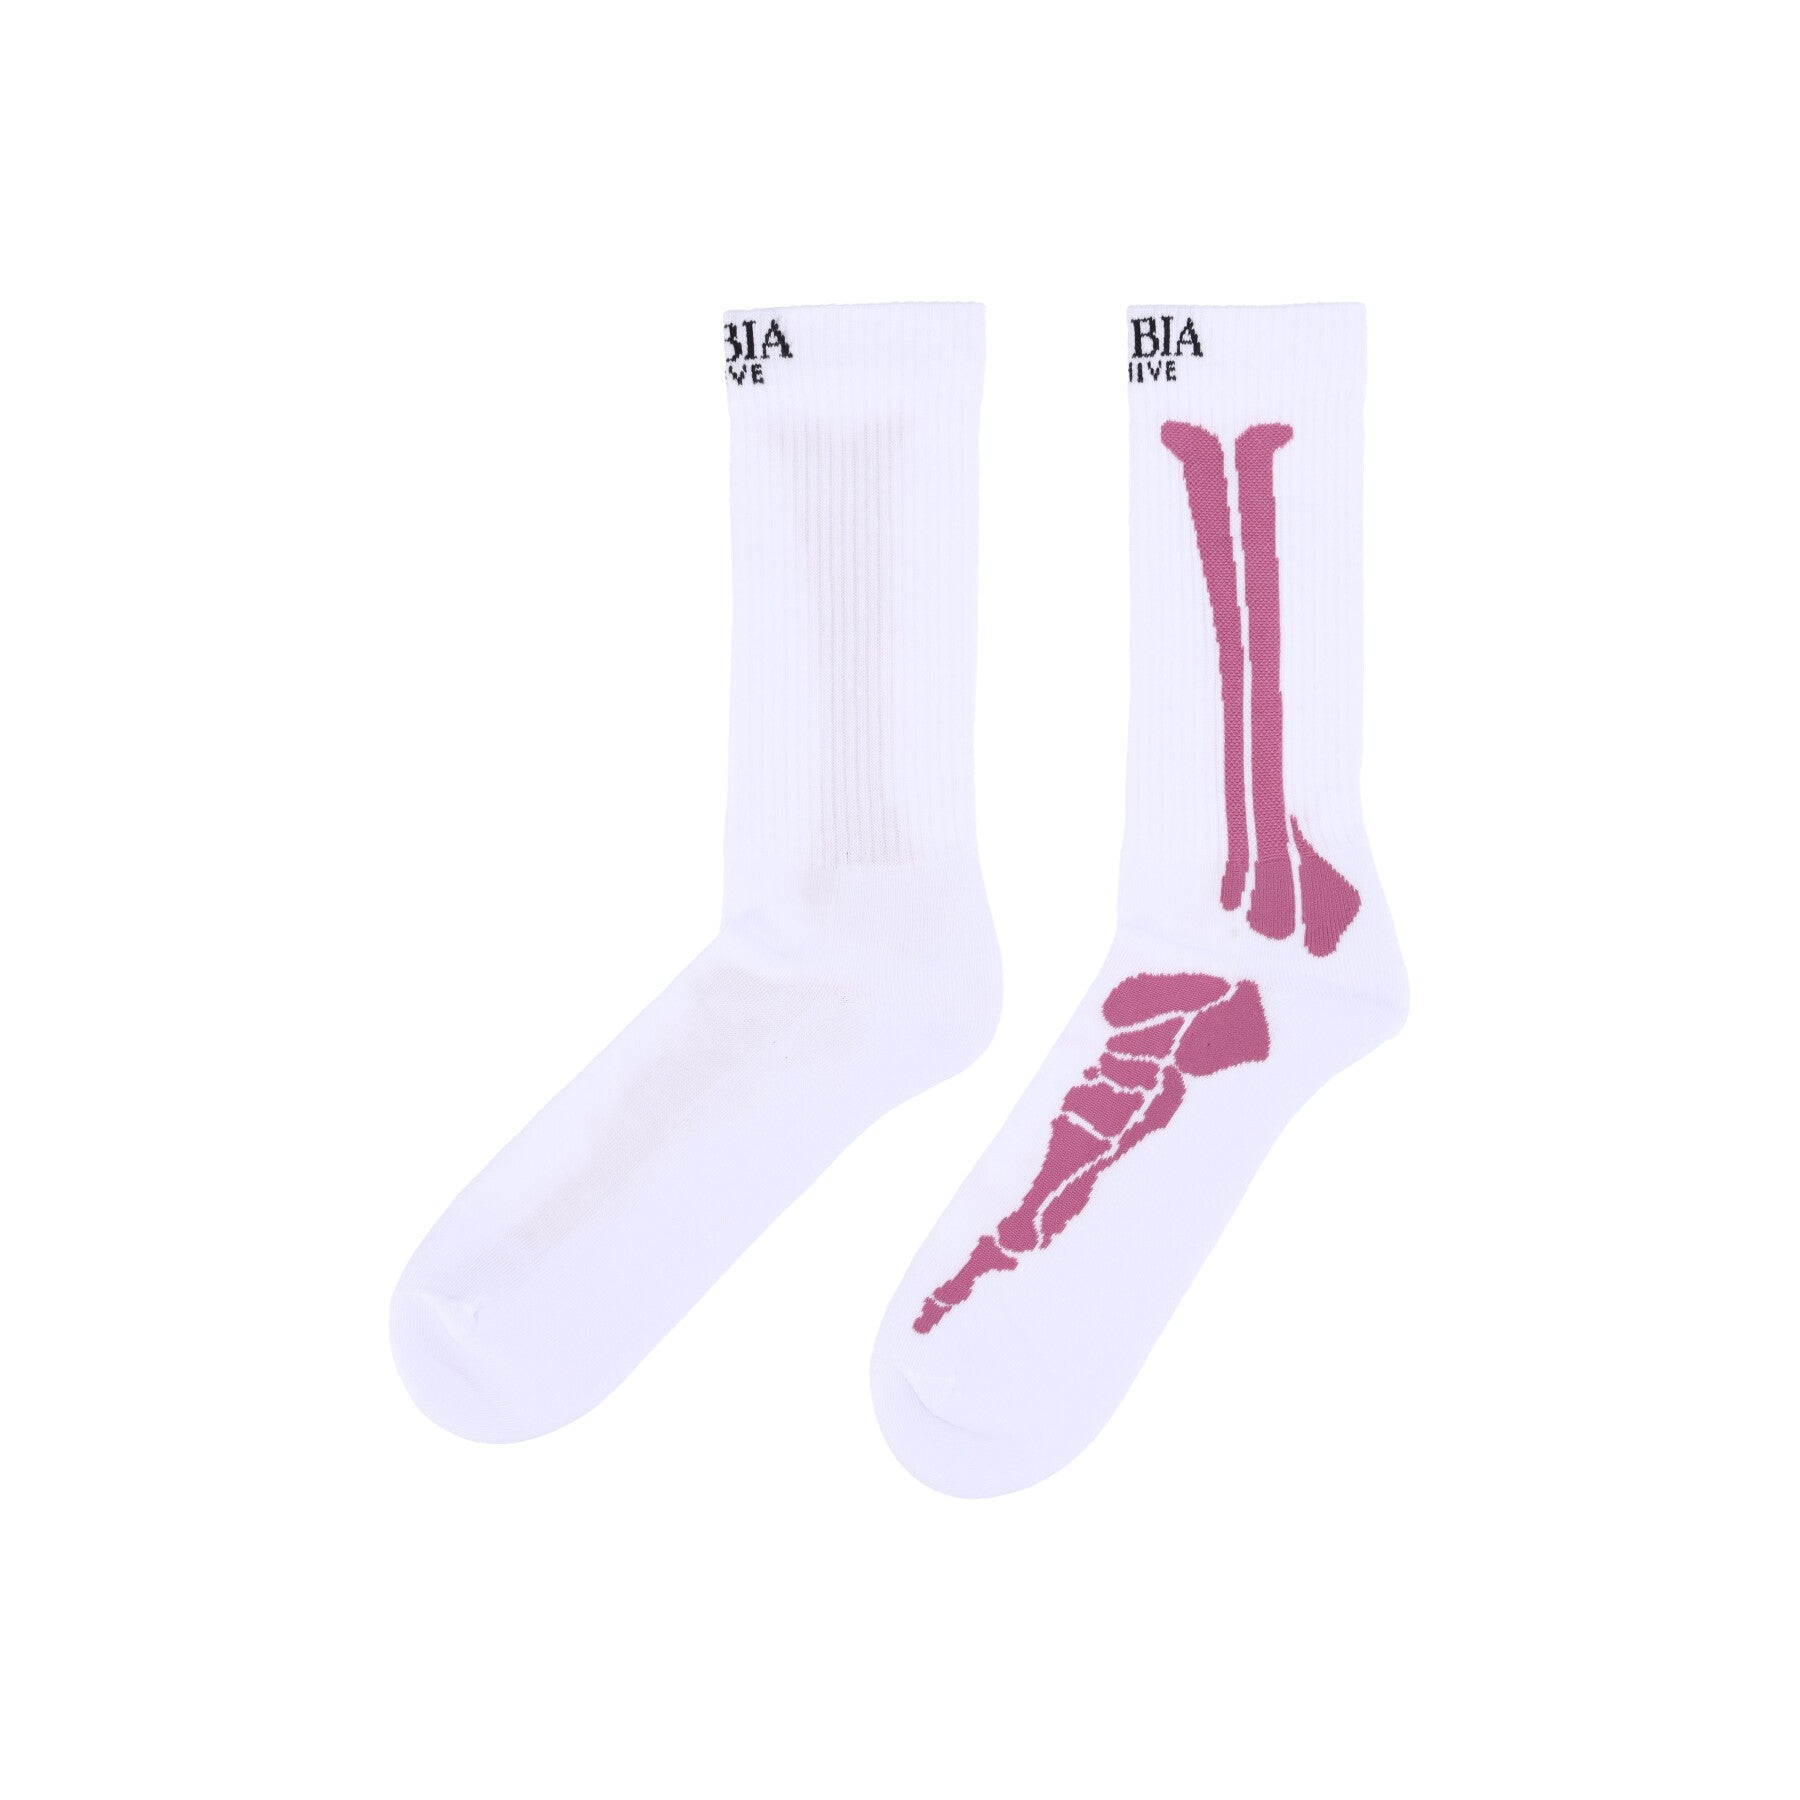 Phobia, Calza Media Uomo Bones Print Socks, White/red